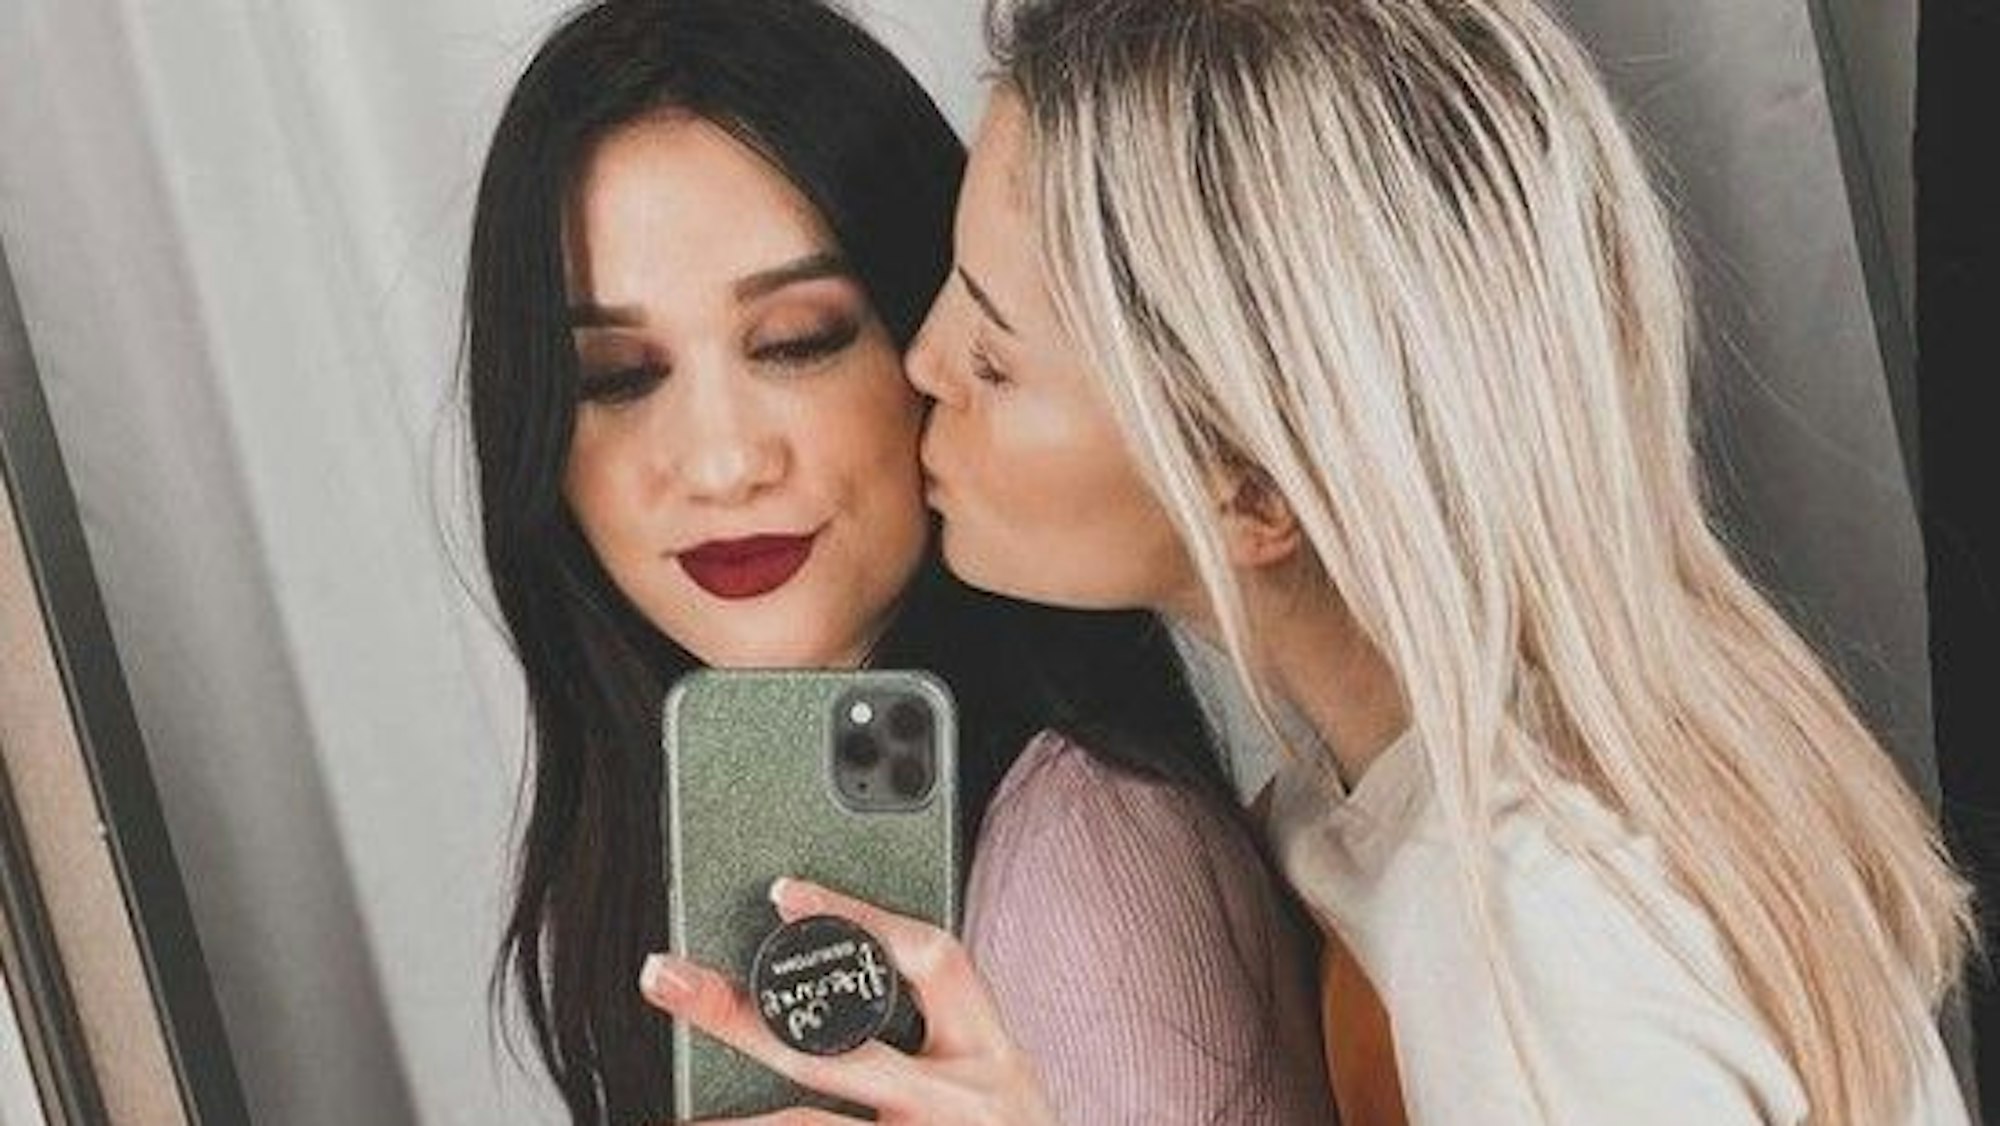 Die Influencerinnen Ina und Vanessa, hier auf einem gemeinsamen Instagram-Selfie vom 13. März 2020, durchleiden schwere Zeiten. Nun gibt es das erste Familienfoto mit ihrem Baby.